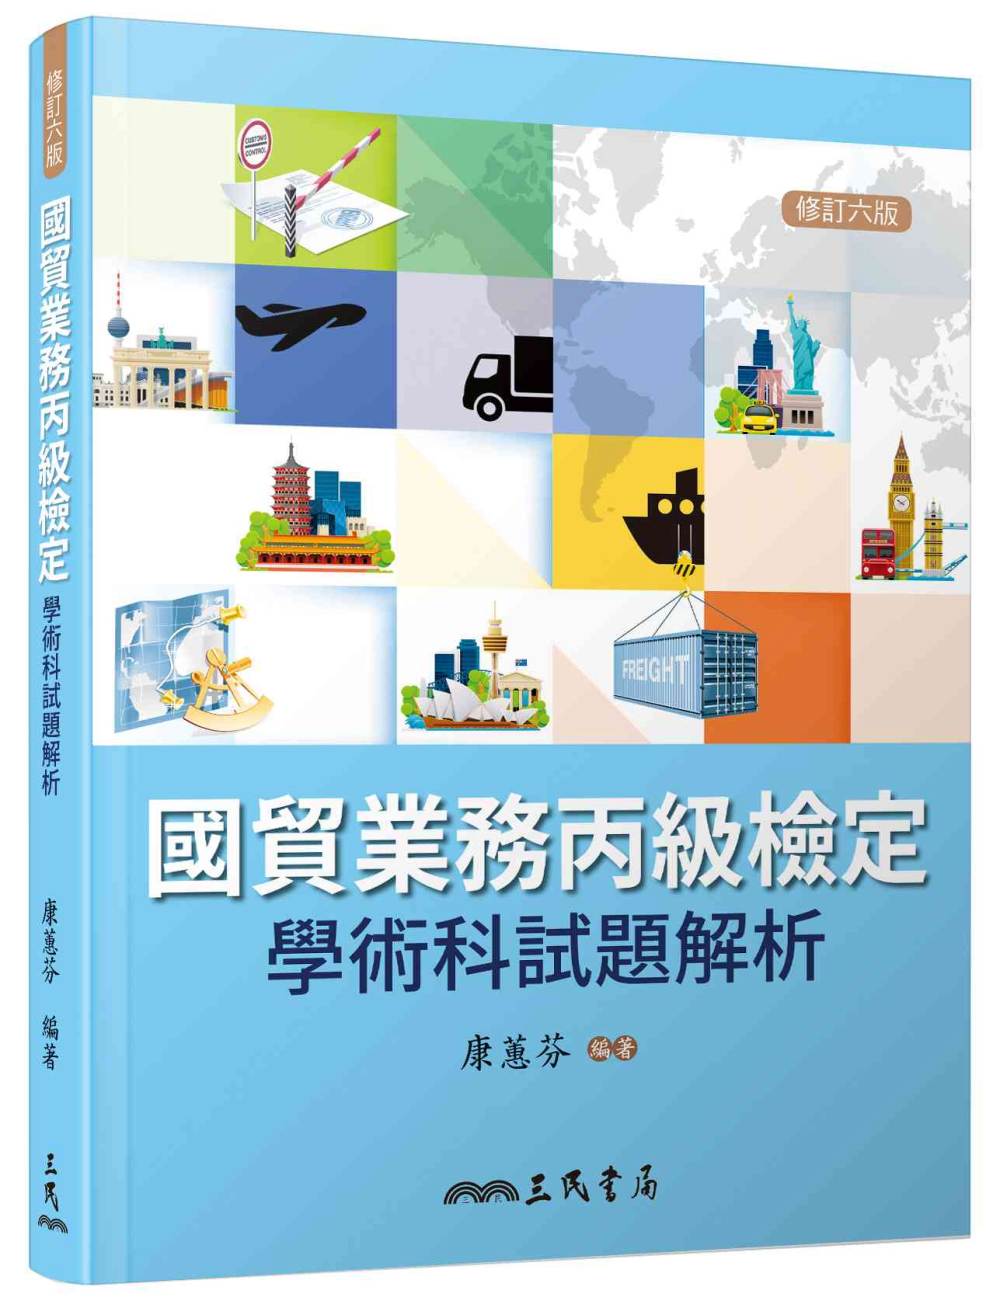 國貿業務丙級檢定學術科試題解析(修訂六版)